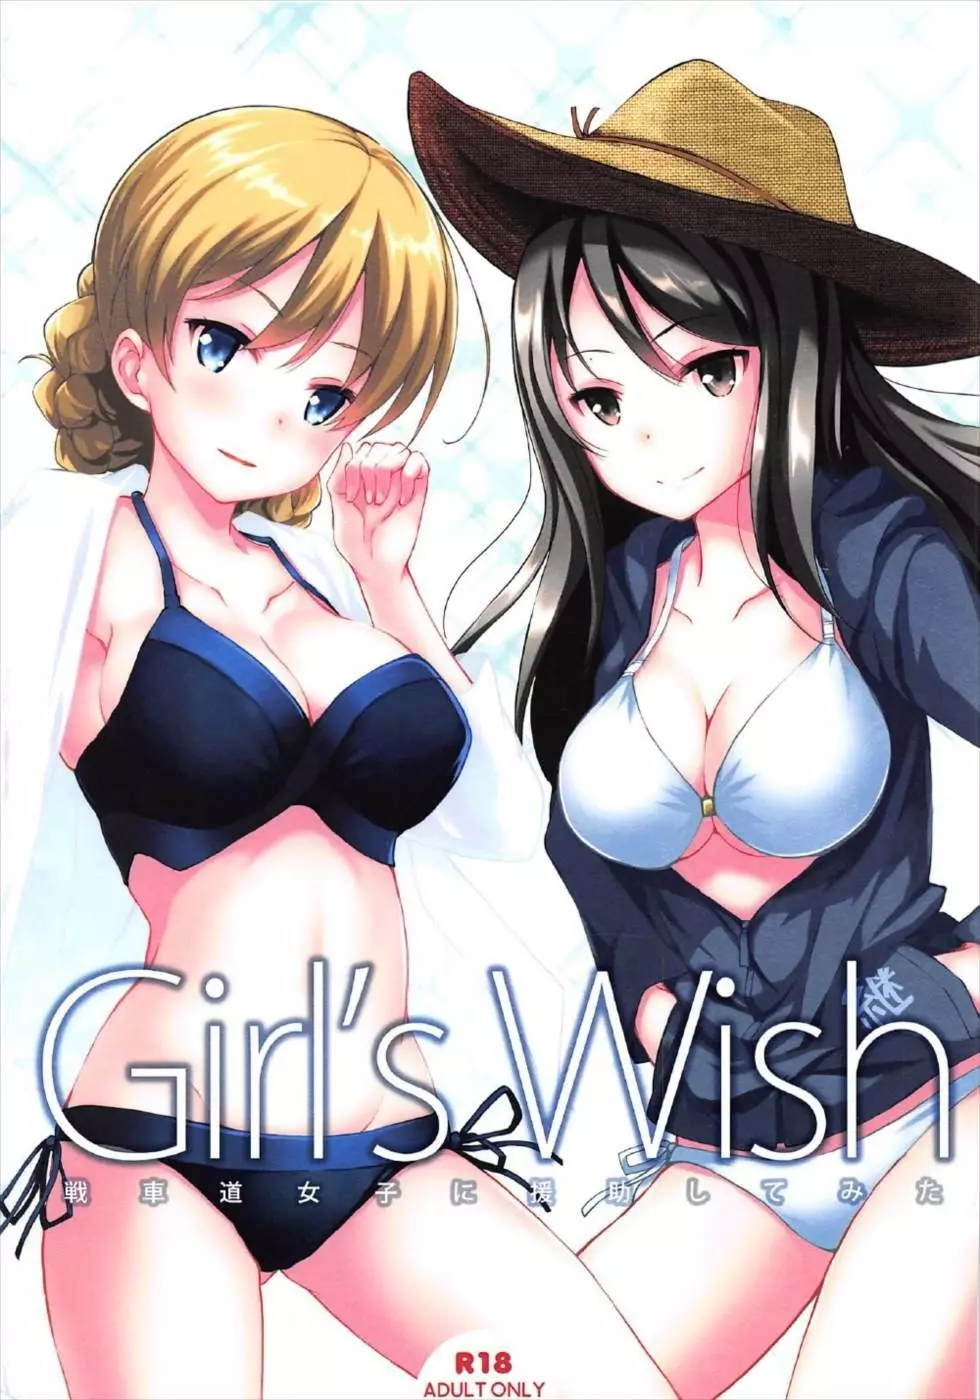 Girl’s wish